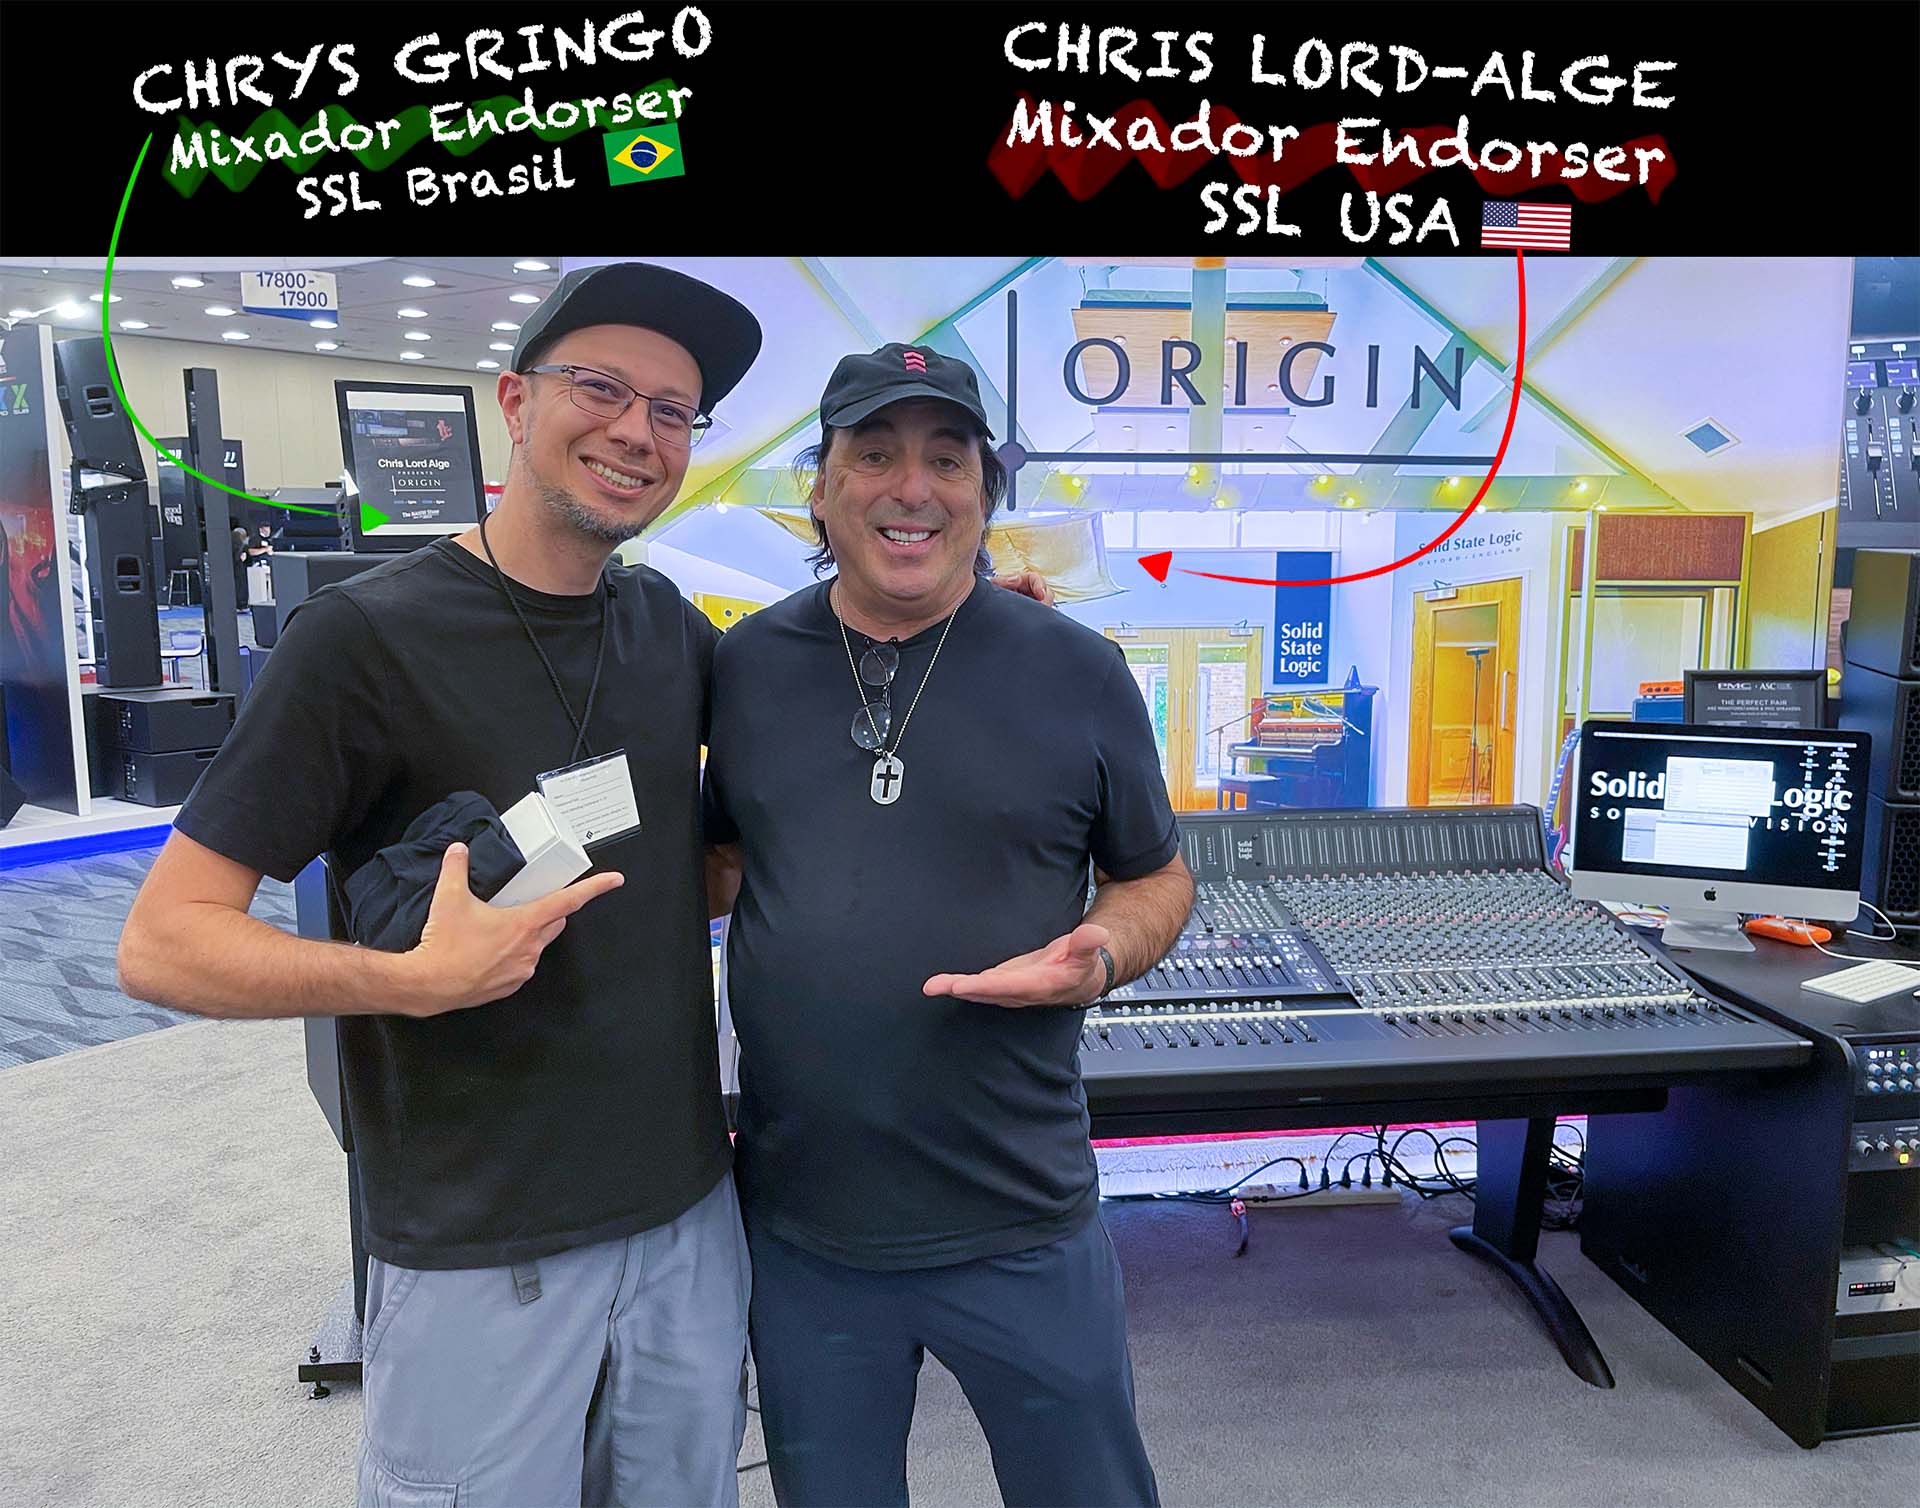 Foto de Chrys Gringo e Chris Lord Alge com uma mesa de som da SSL ao fundo